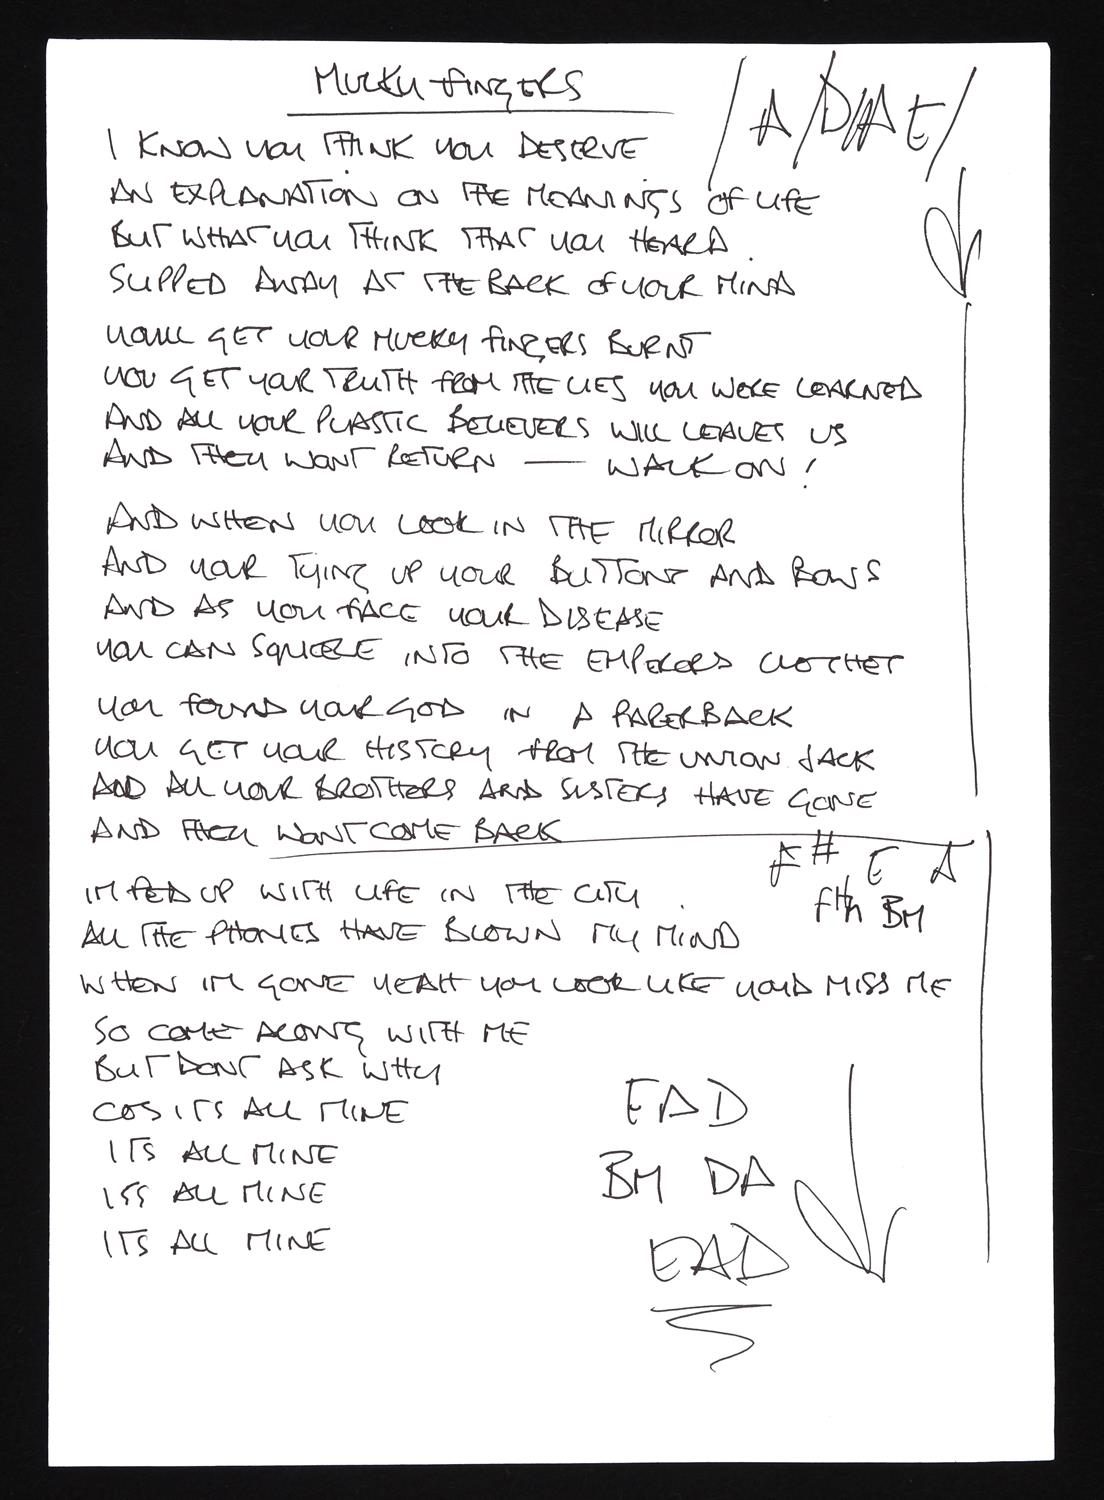 OASIS – “Mucky Fingers” Lyrics Handwritten by Noel Gallagher – “Mucky Fingers” lyrics were not used